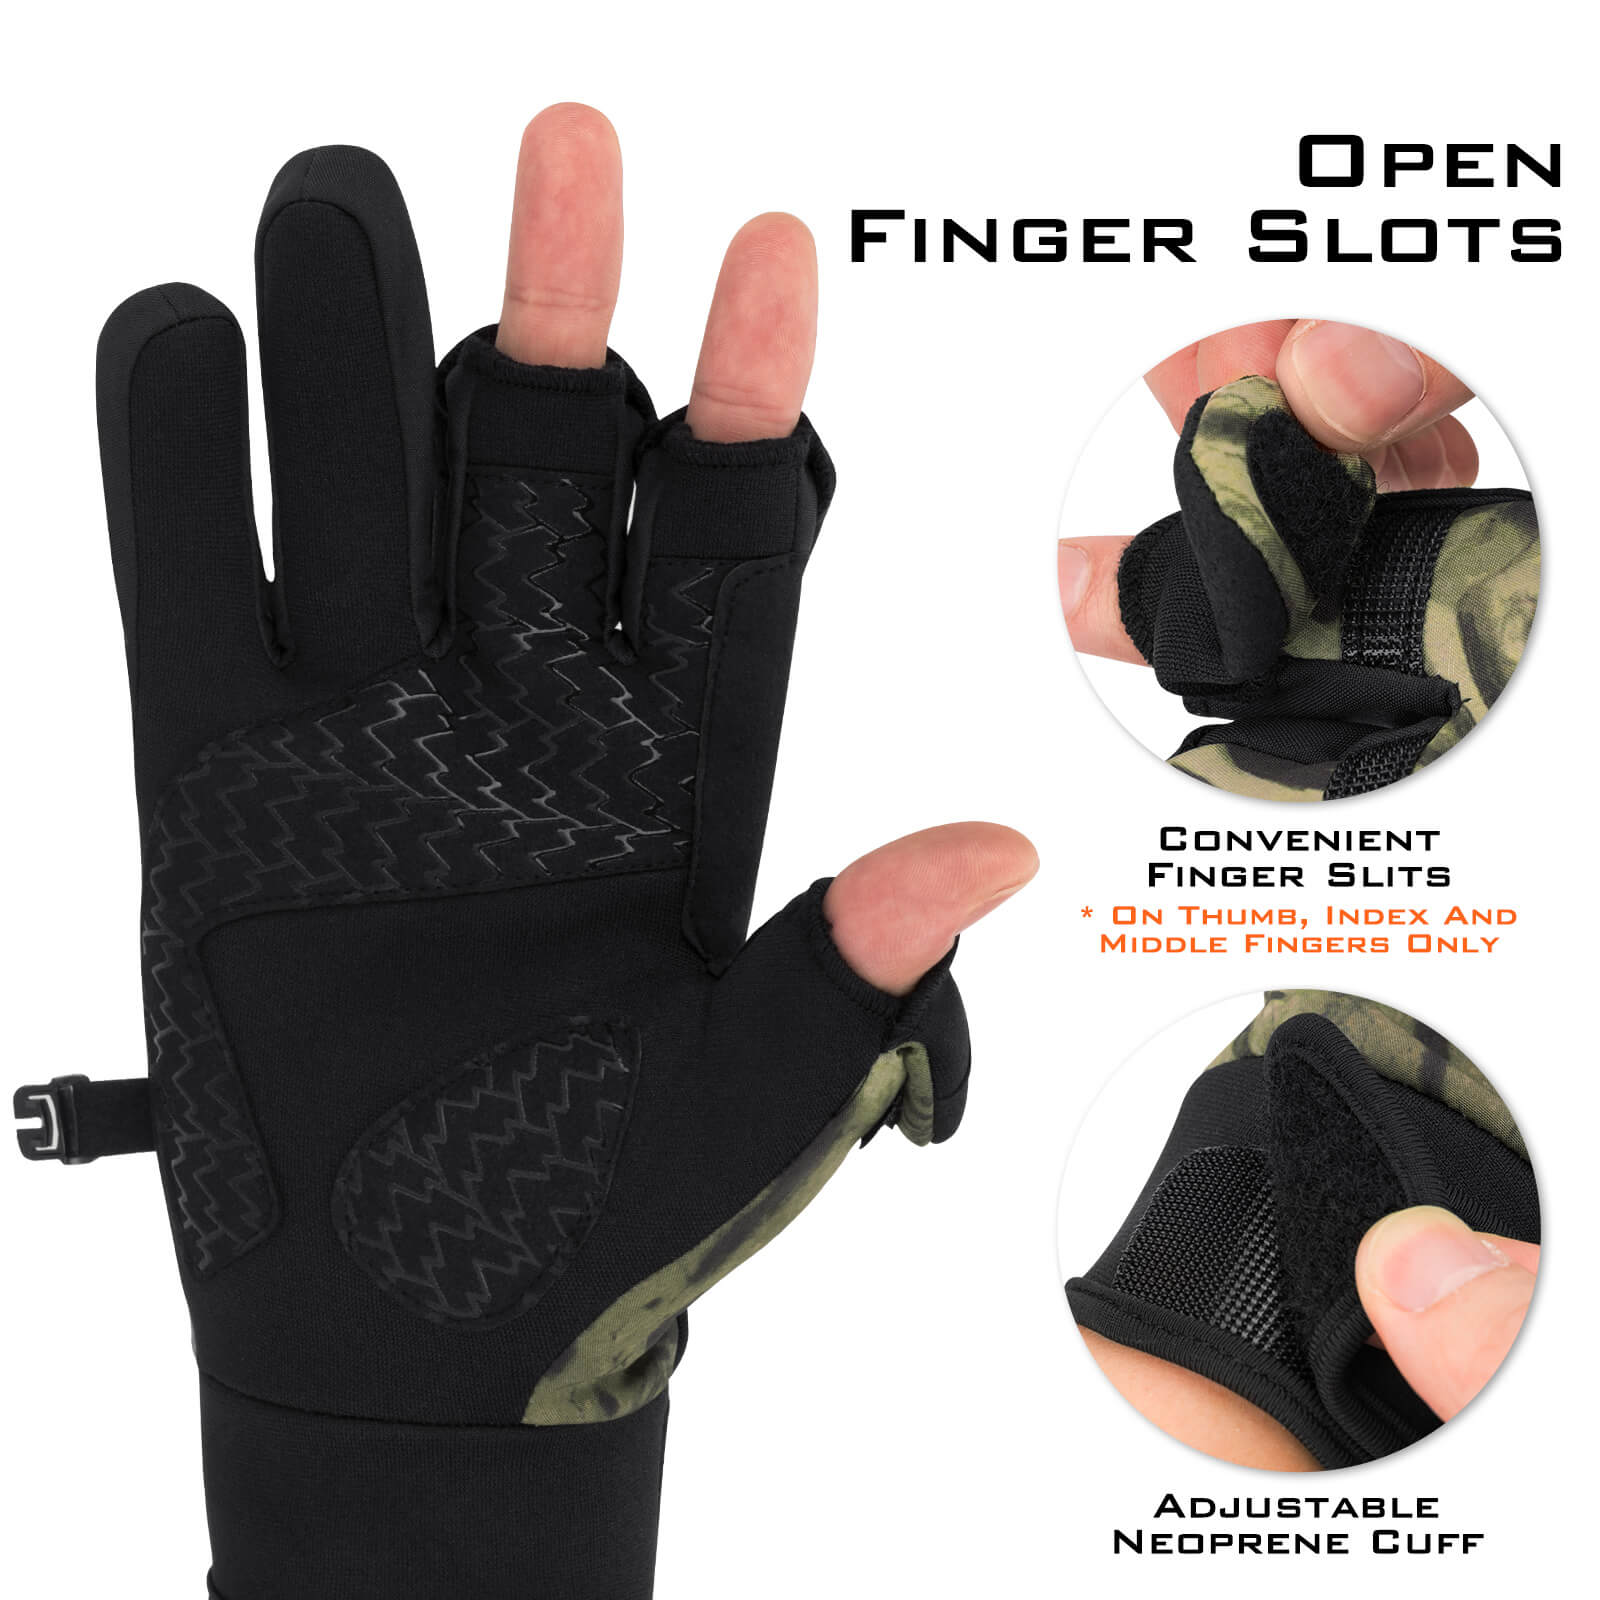 KastKing Mountain Mist Fishing Gloves - Prym1 Blackout / X-Large